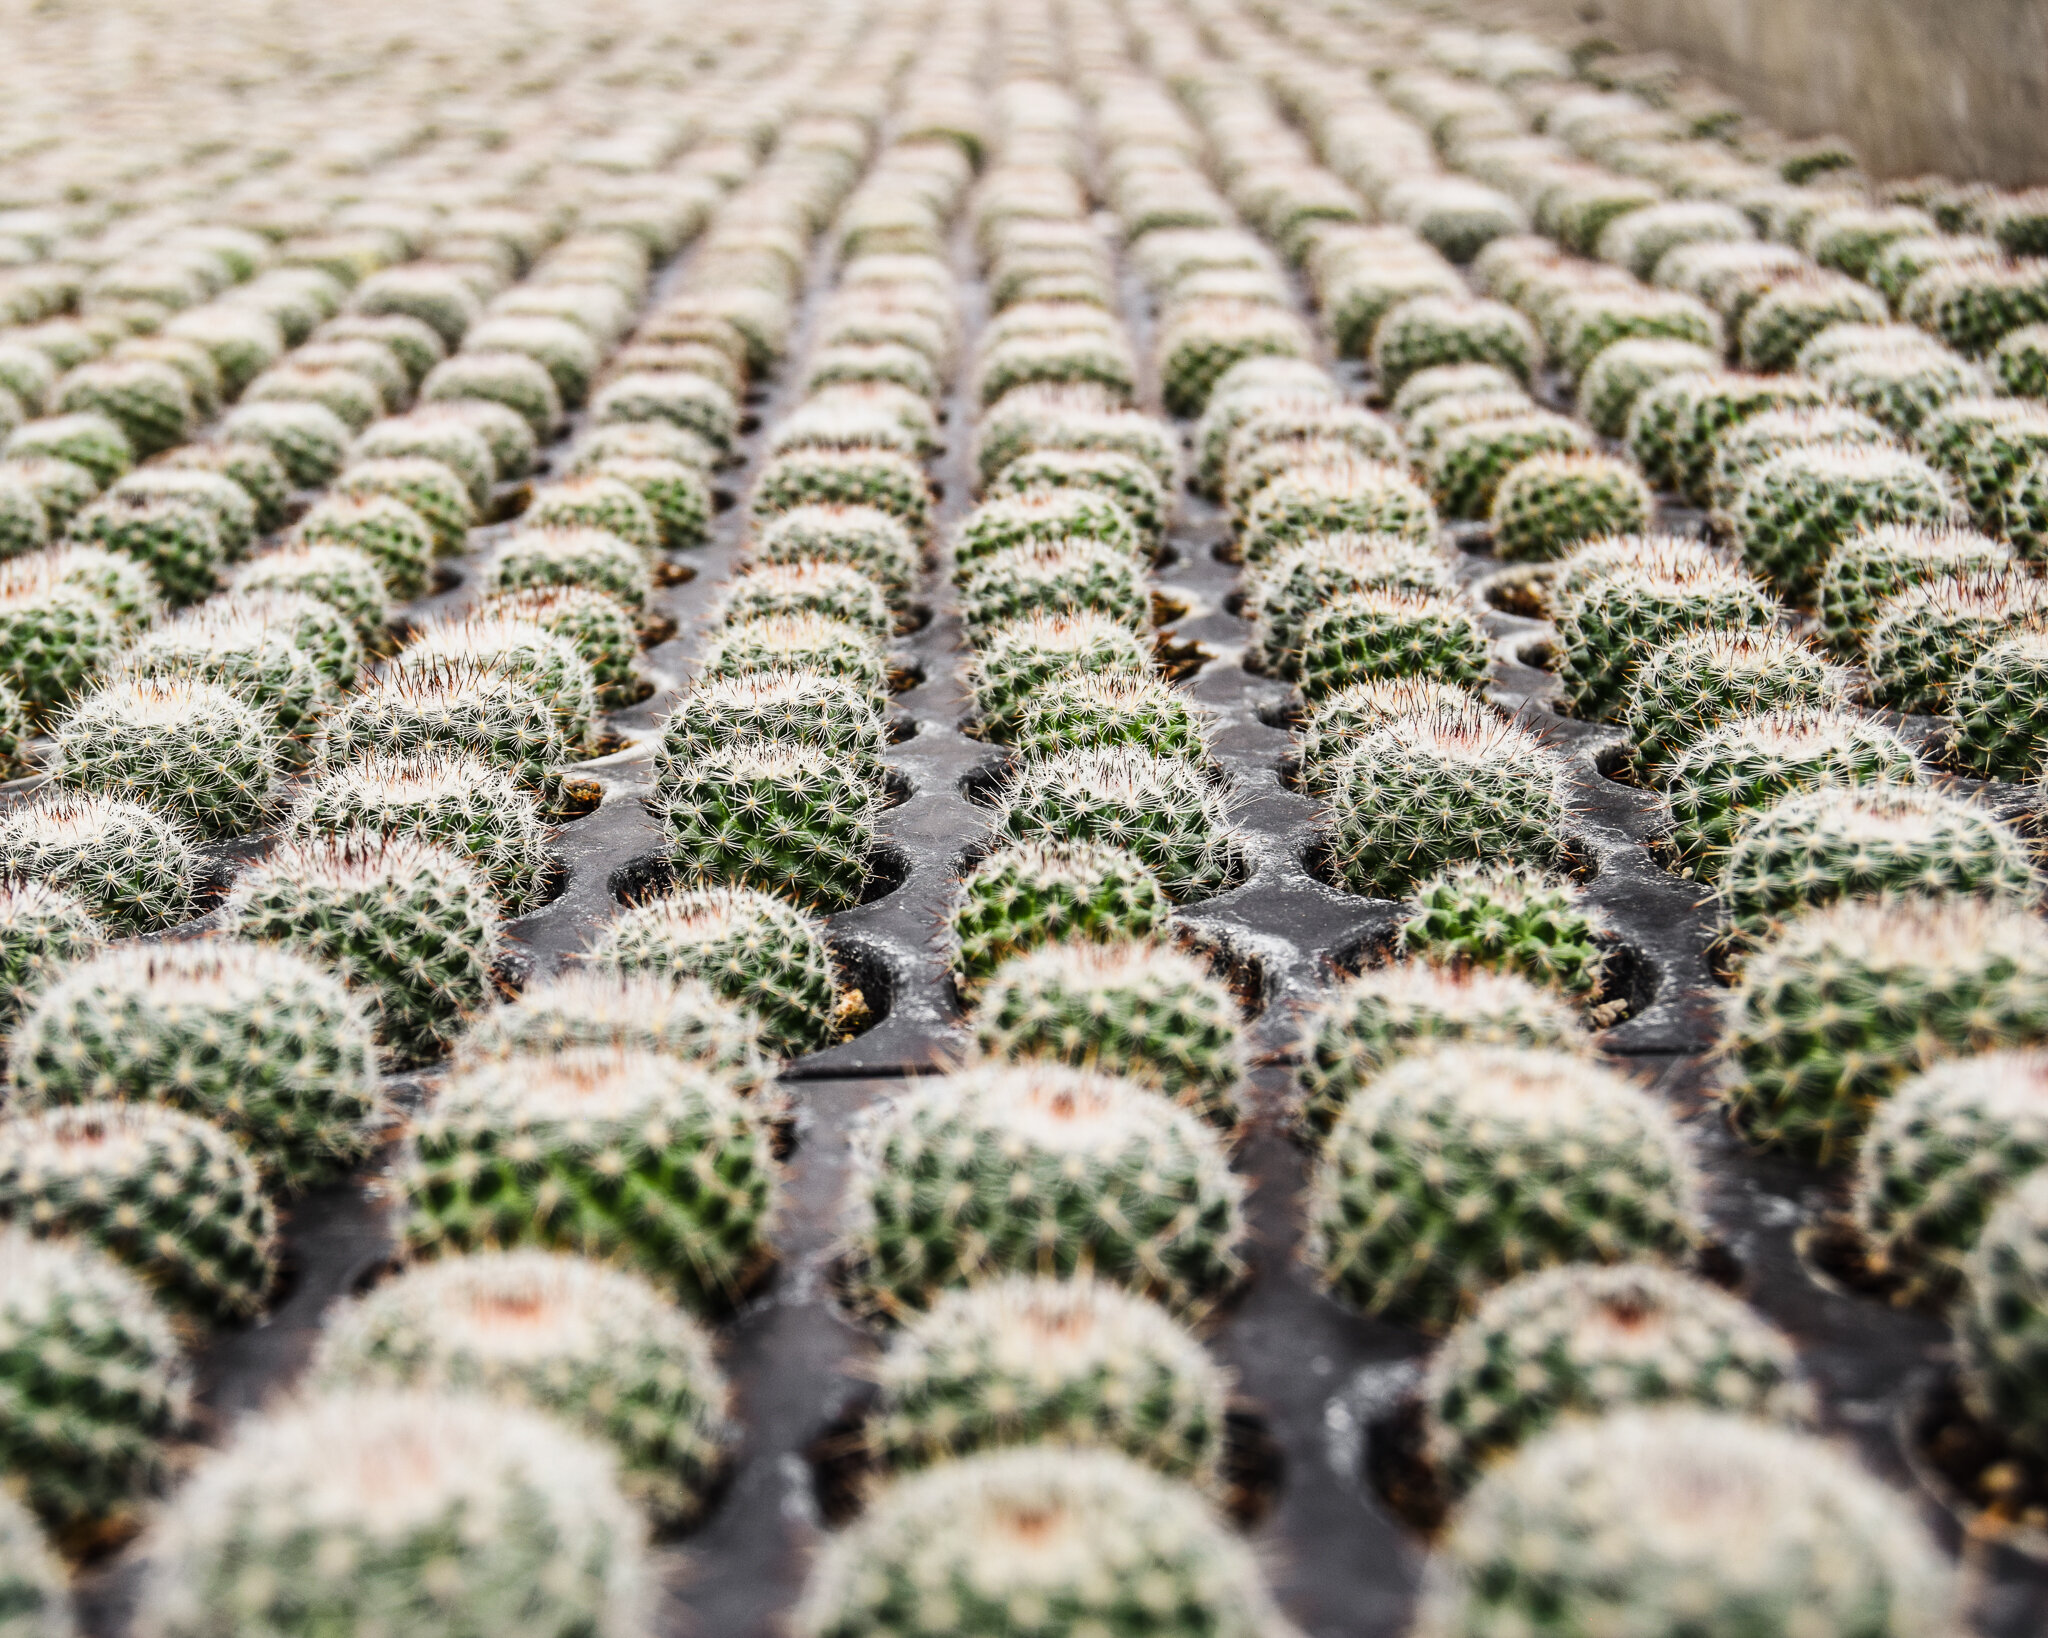 Cacti growing in Guatemala, Palki